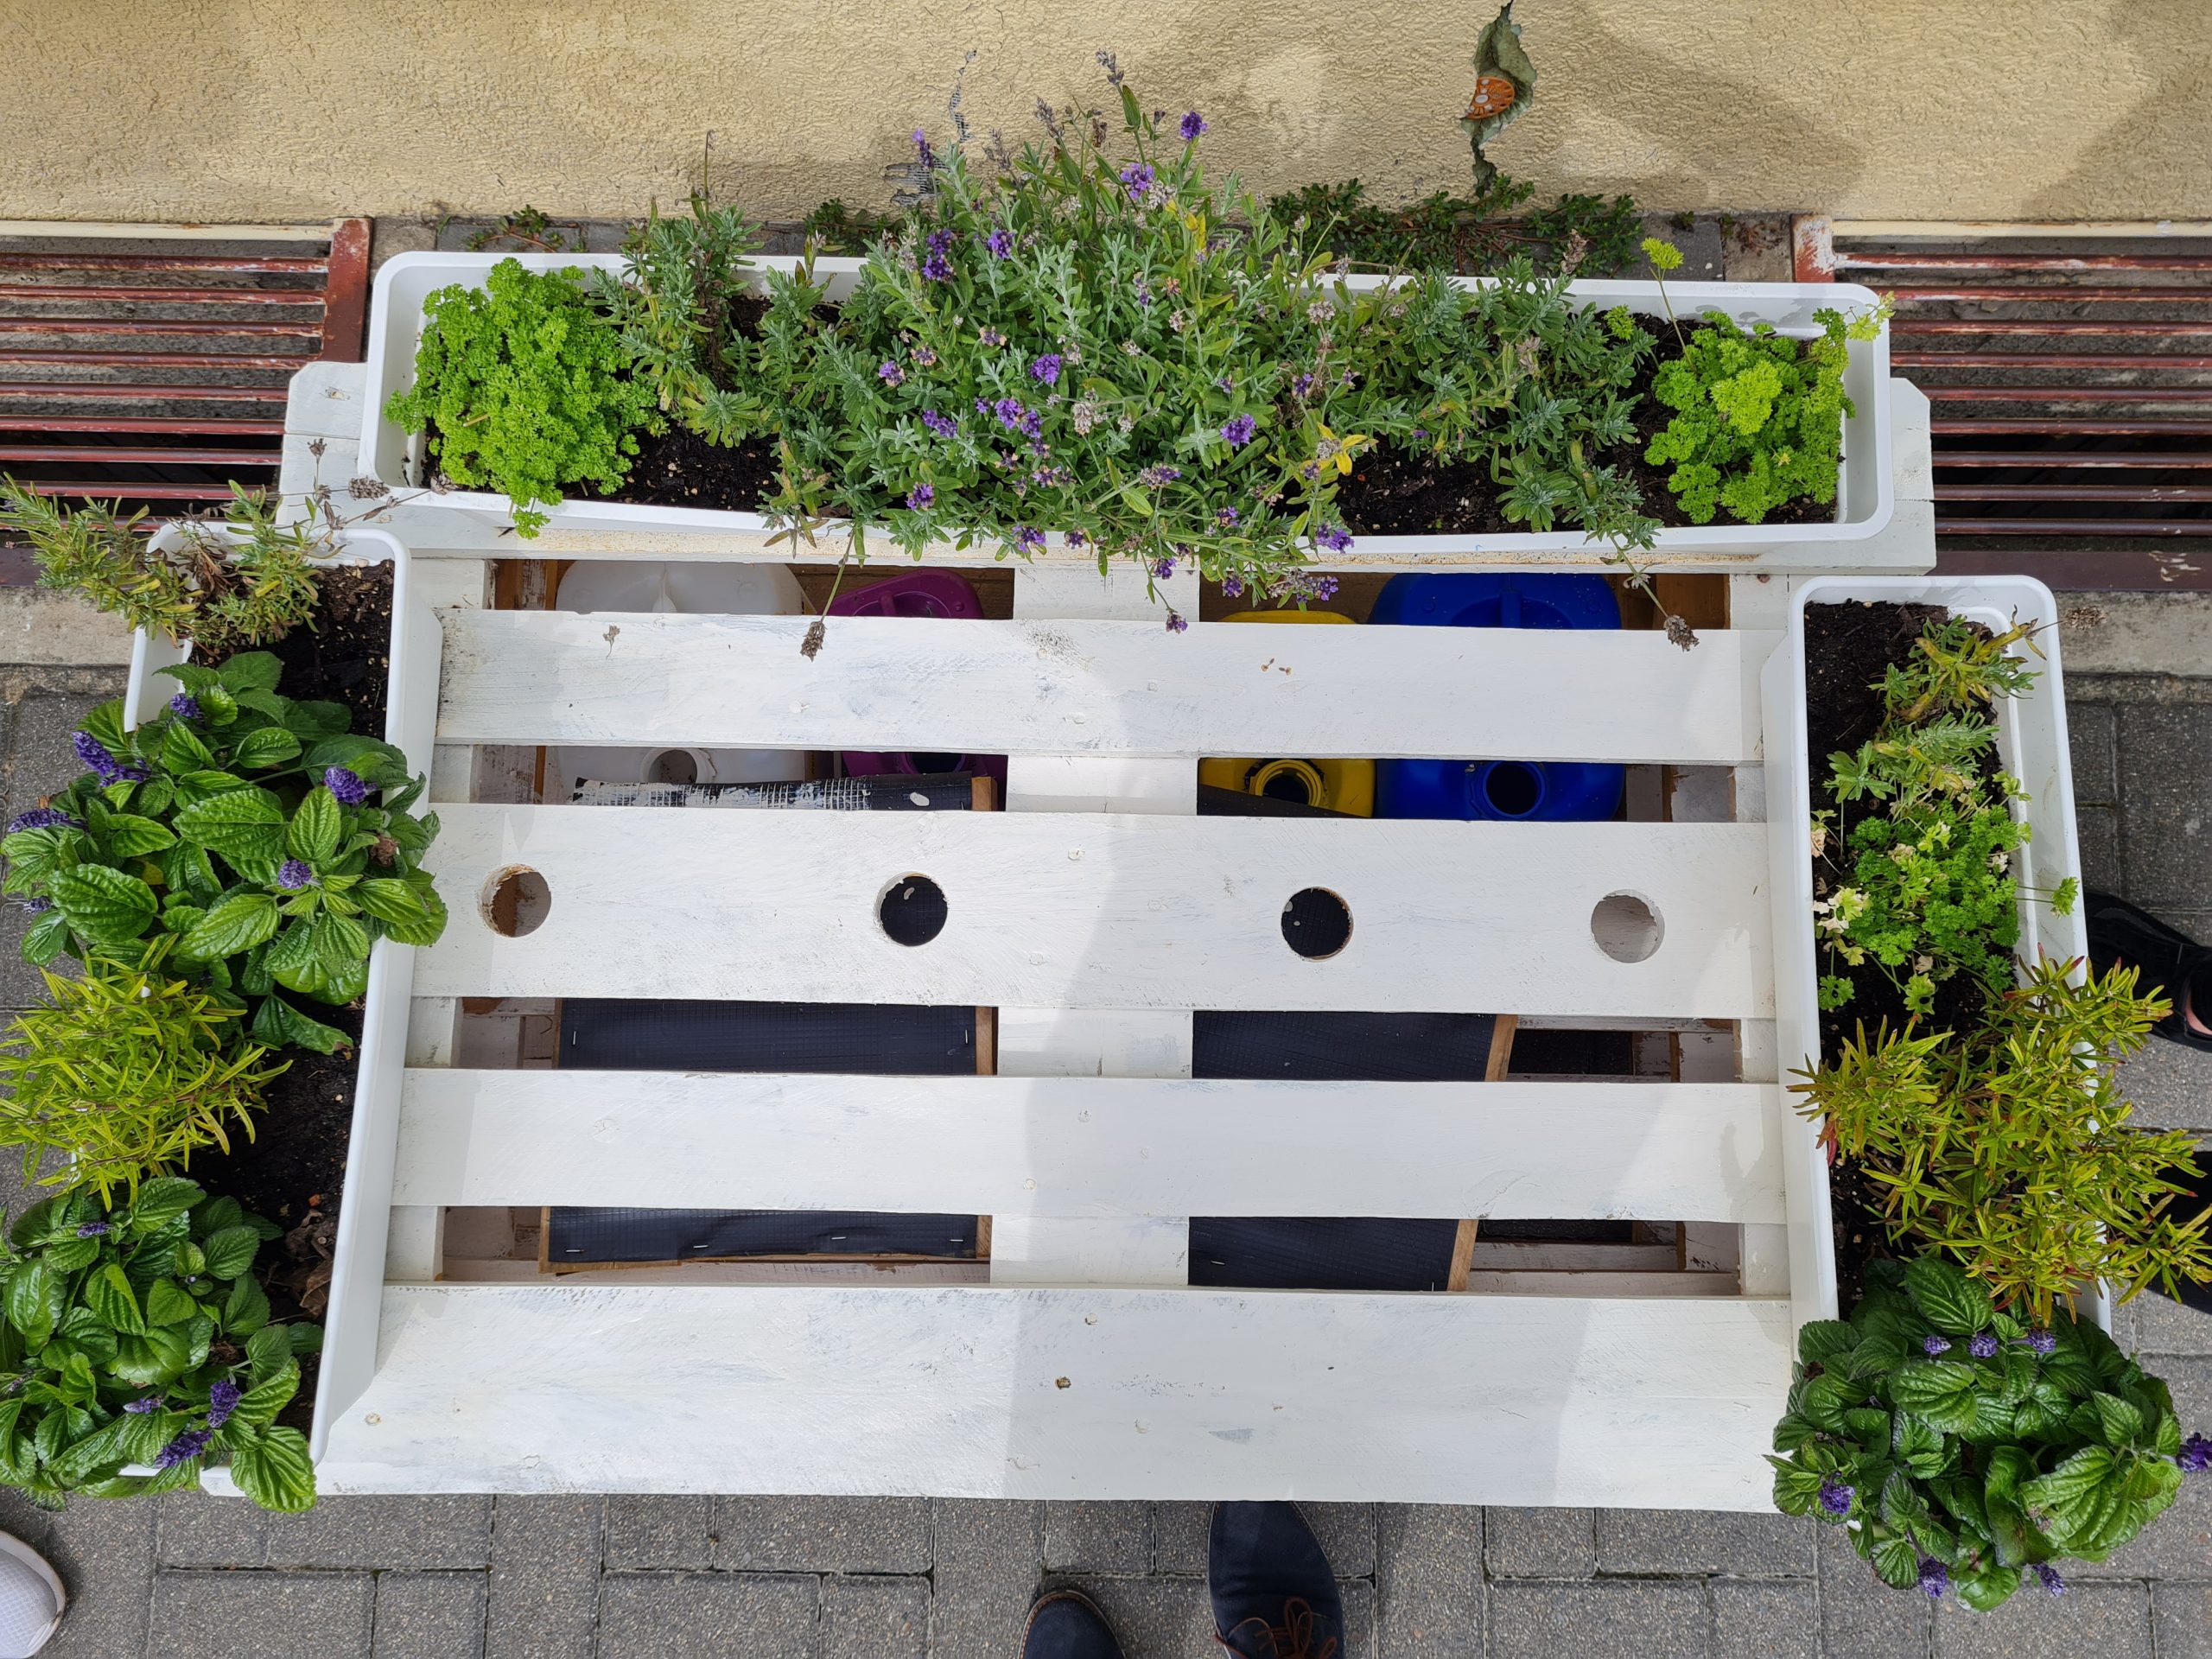 Das Bild zeigt eine alternative Regenbank von oben. Sie ist weiß angestrichen und hat Hochbeete in Form von bepflanzten Balkonkästen an den Seiten und anstelle der Lehne.